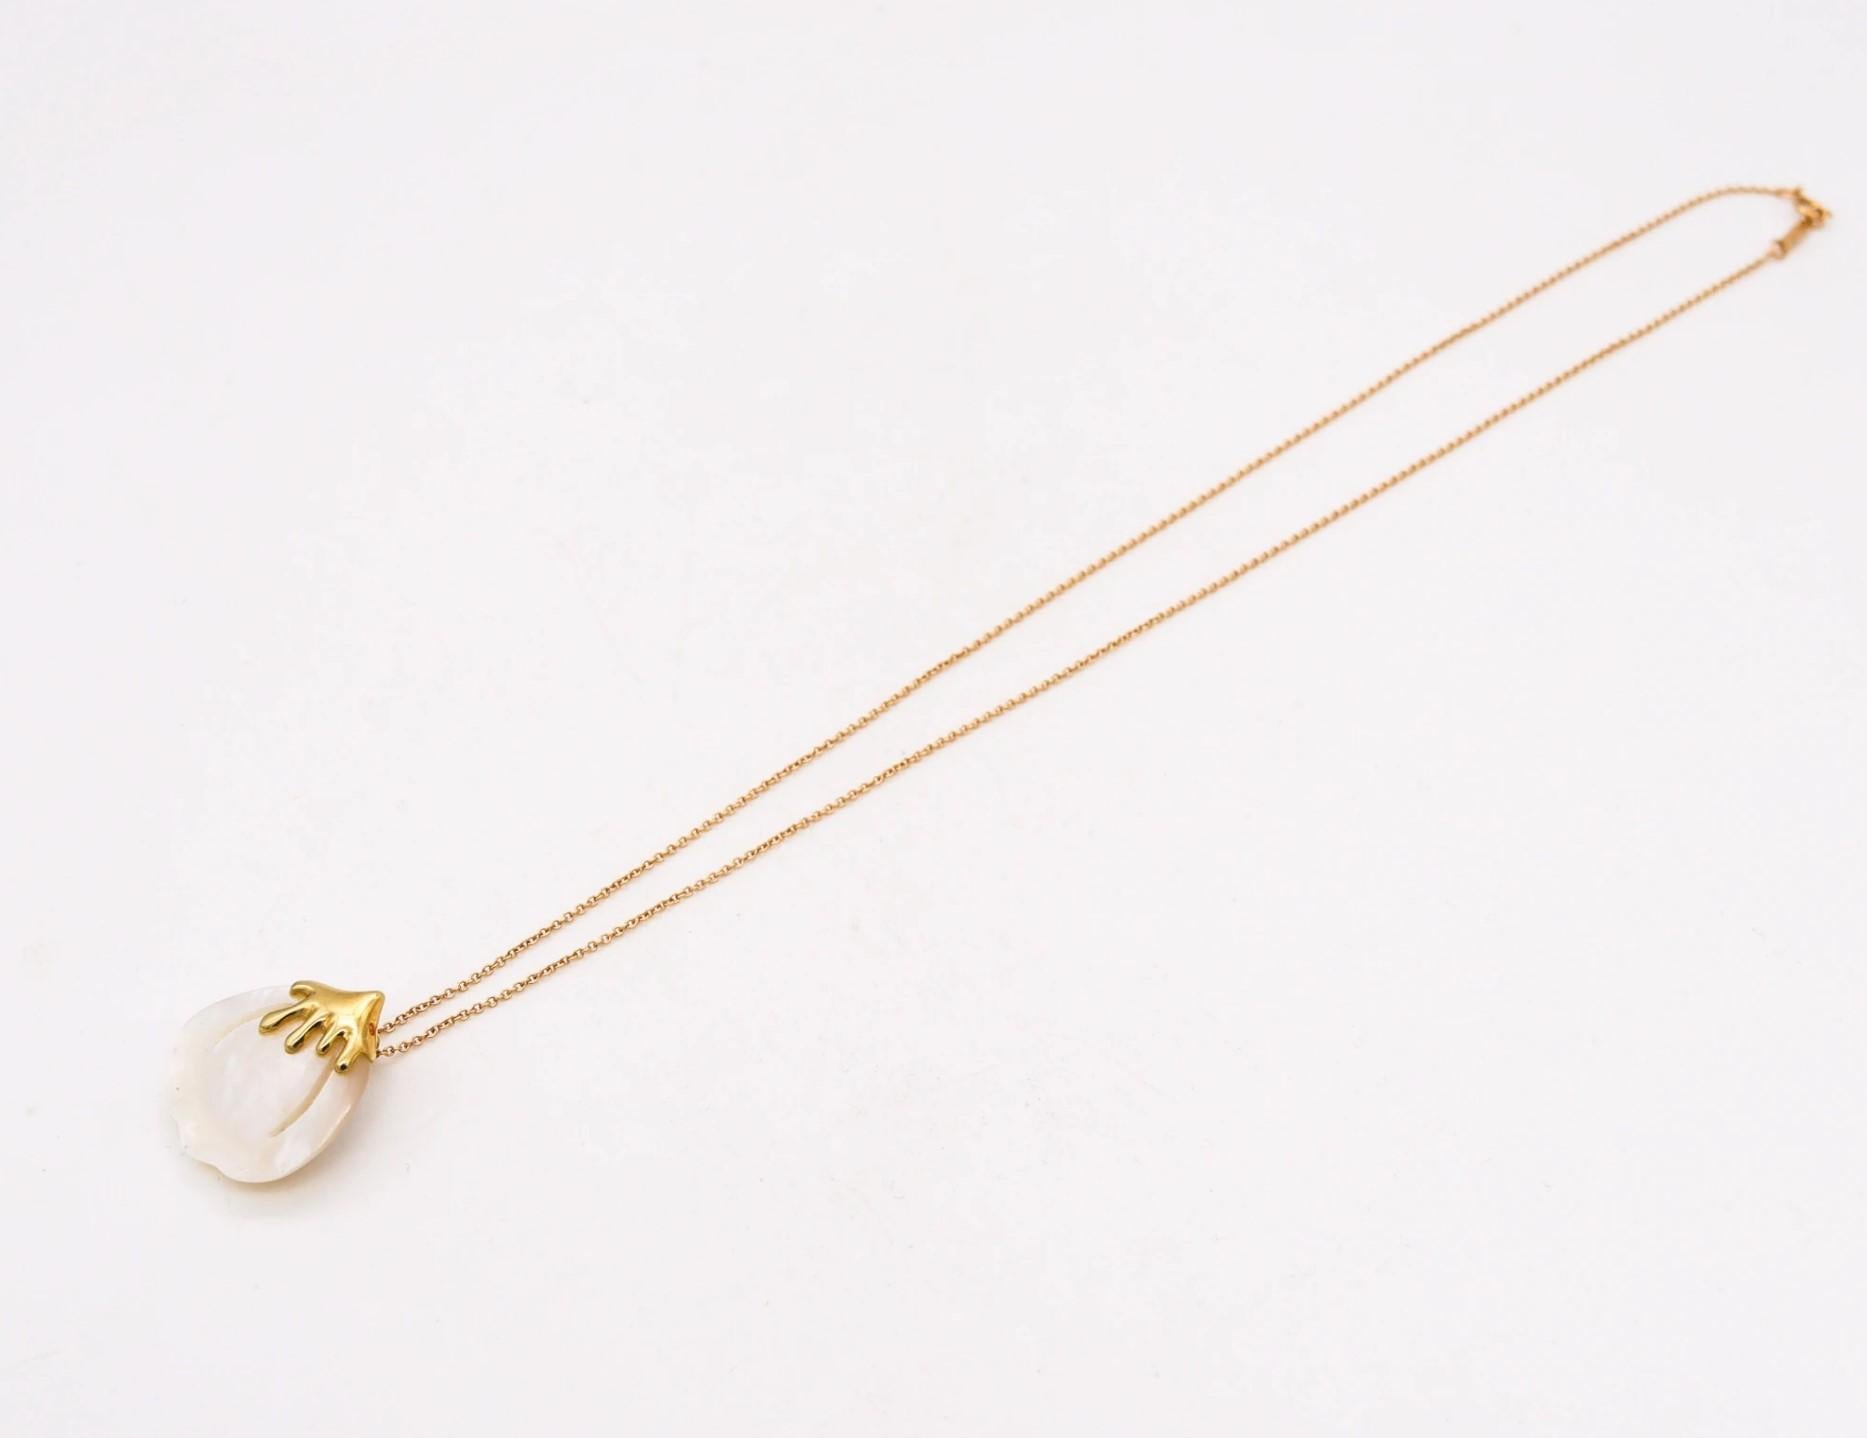 Un collier de pétales conçu par Angela Cummings pour Tiffany & Co.

Magnifique et jeune collier Ptal, créé par Cummings pour Tiffany & Co. en 1976. Cette pièce fait partie de la collection des années 1976-1977 et a été réalisée en or jaune 18